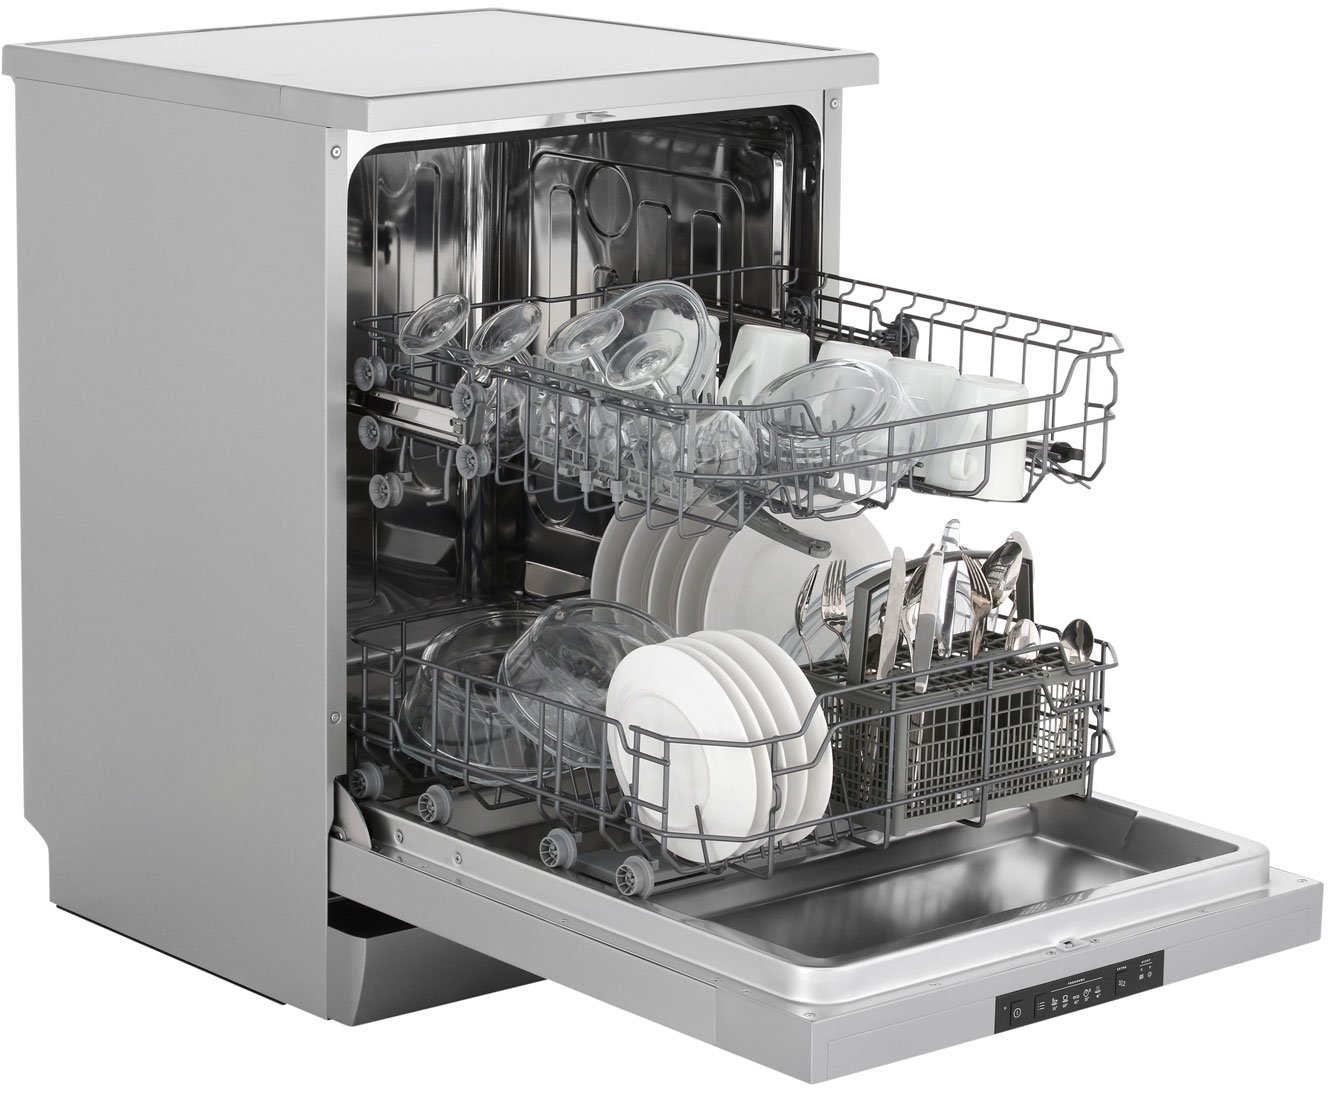 Посудомоечная машина горенье отдельностоящая. Посудомоечная машина Gorenje gs62040w. Посудомоечная машина Gorenje gs53010w. Посудомоечная машина Gorenje gs52040s. Gorenje gs62010s.